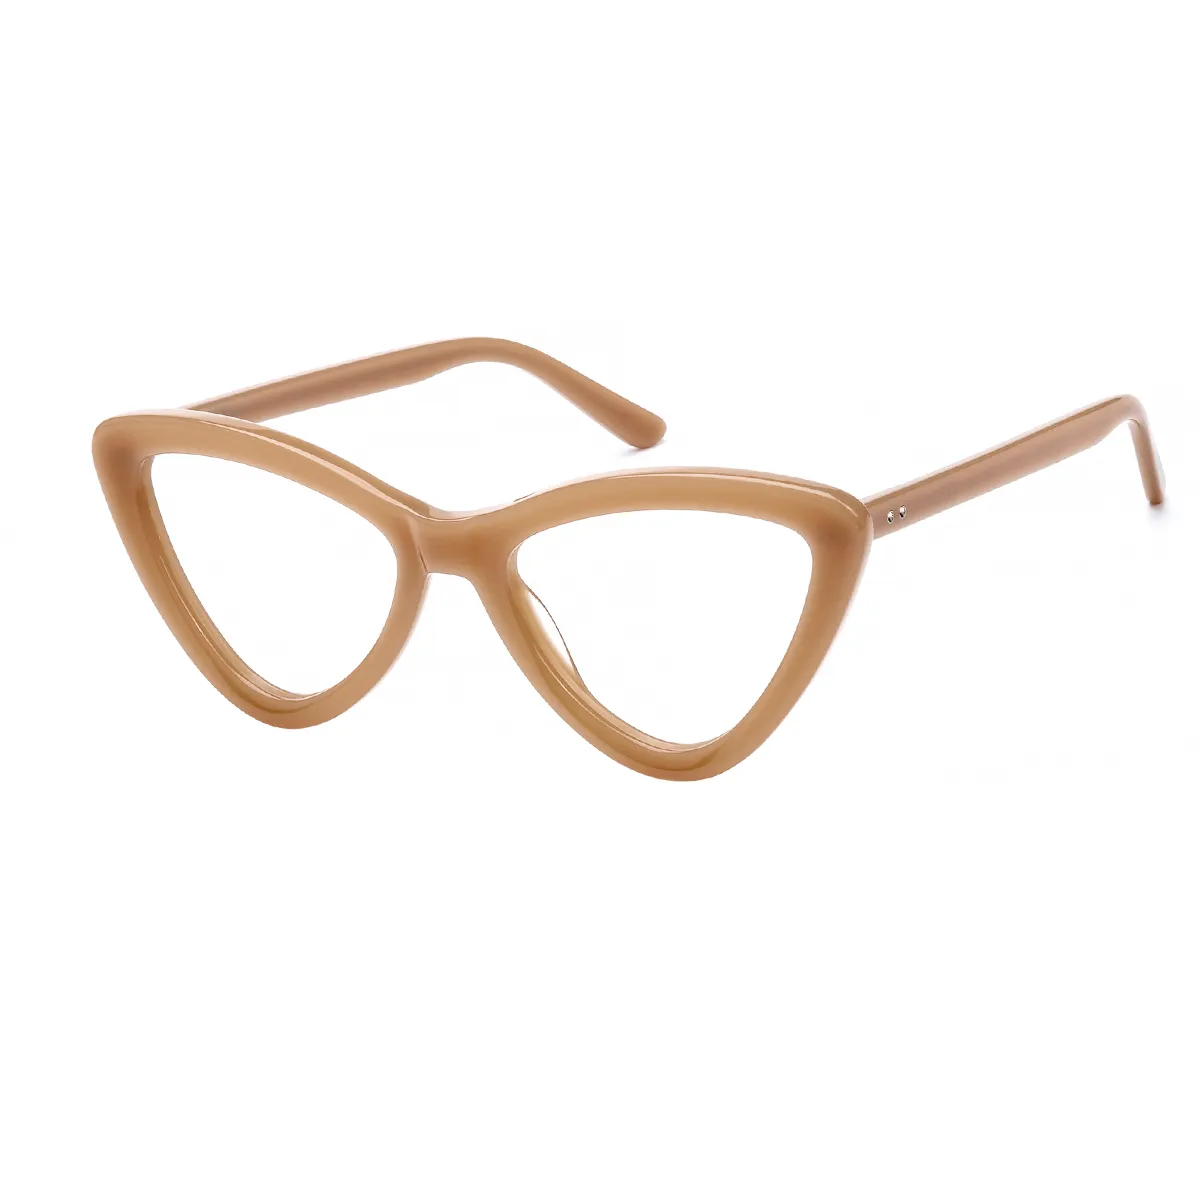 Ciou - Cat-eye Light Brown Glasses for Women - EFE